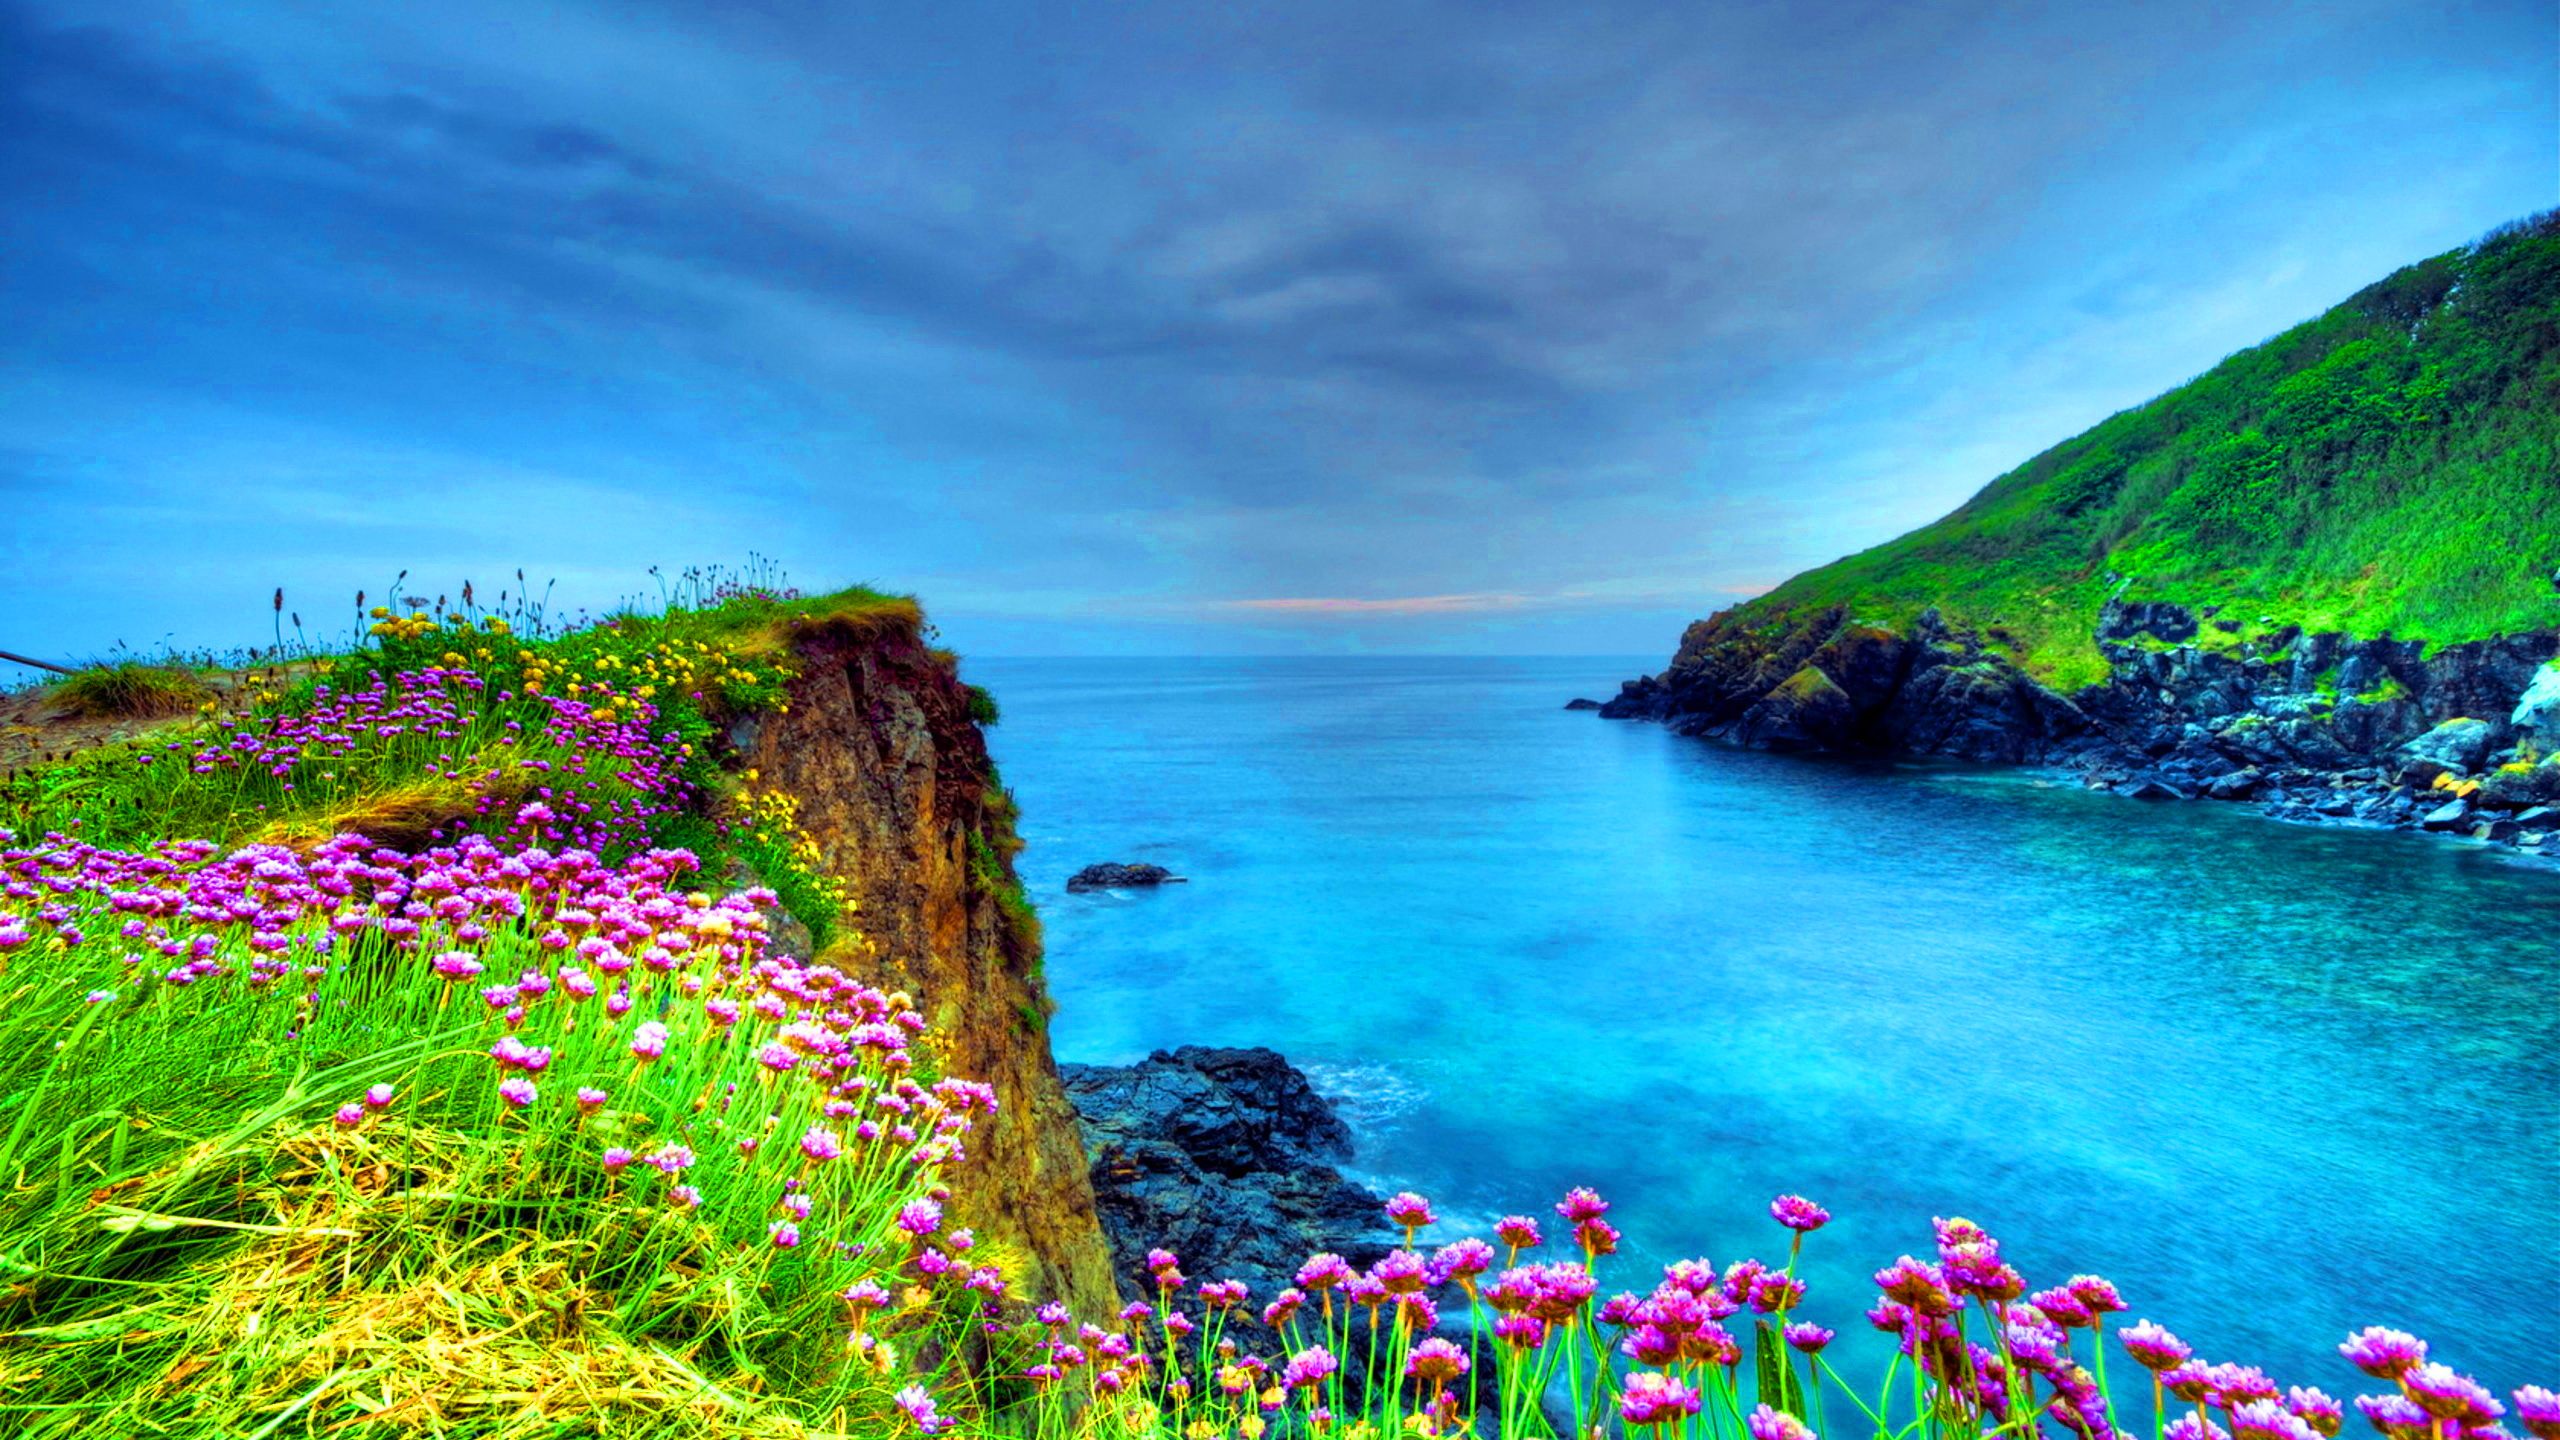 Seaside Spring Wild Flowers Blue Sea Bay Ocean 4k Ultra HD Tv